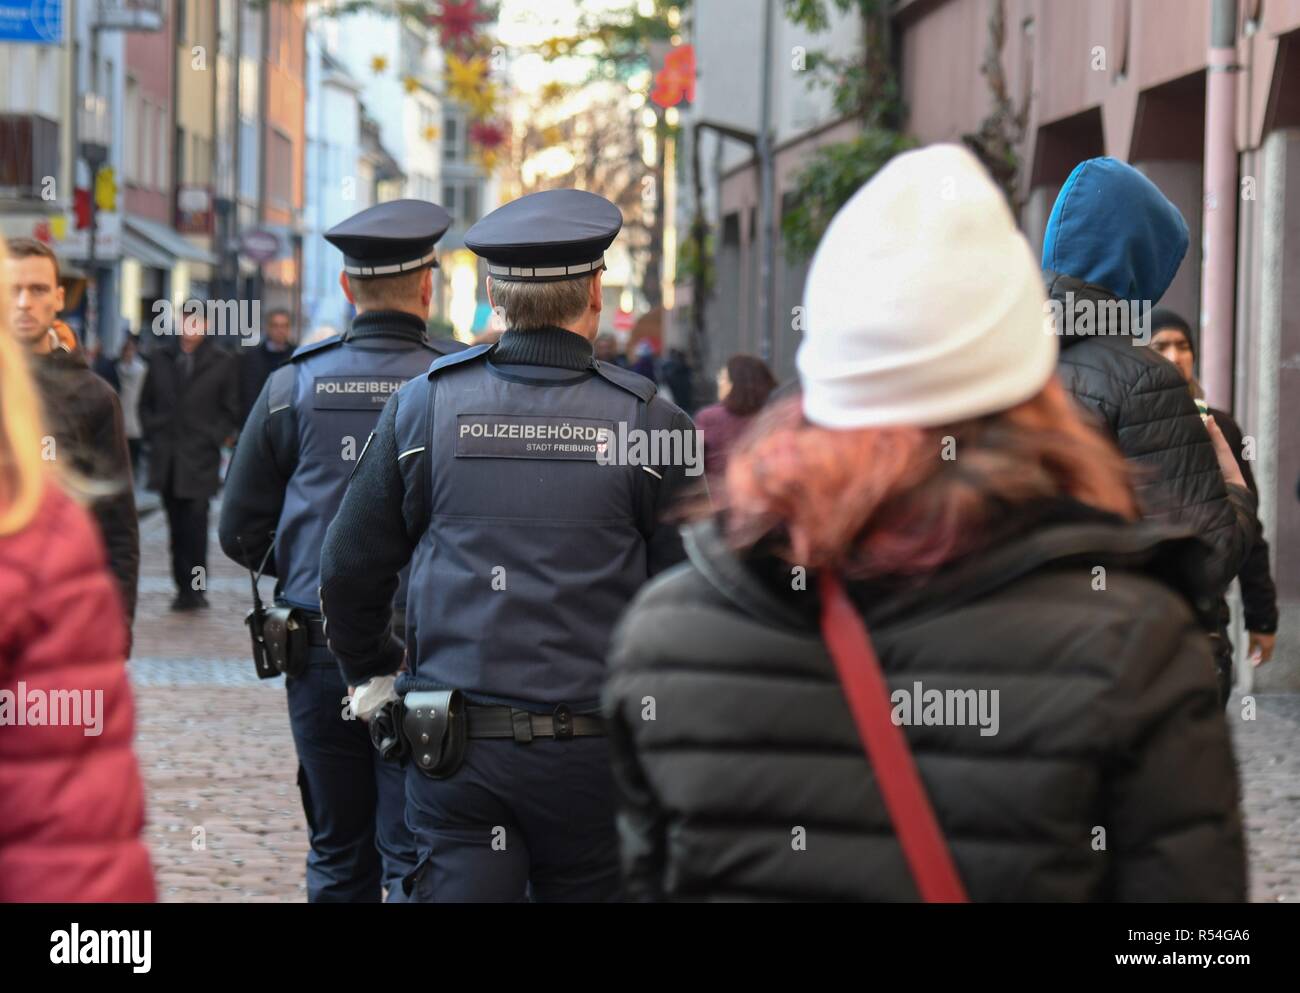 Les policiers de la ville de Freiburg, nov. 17, 2018 | dans le monde entier Banque D'Images